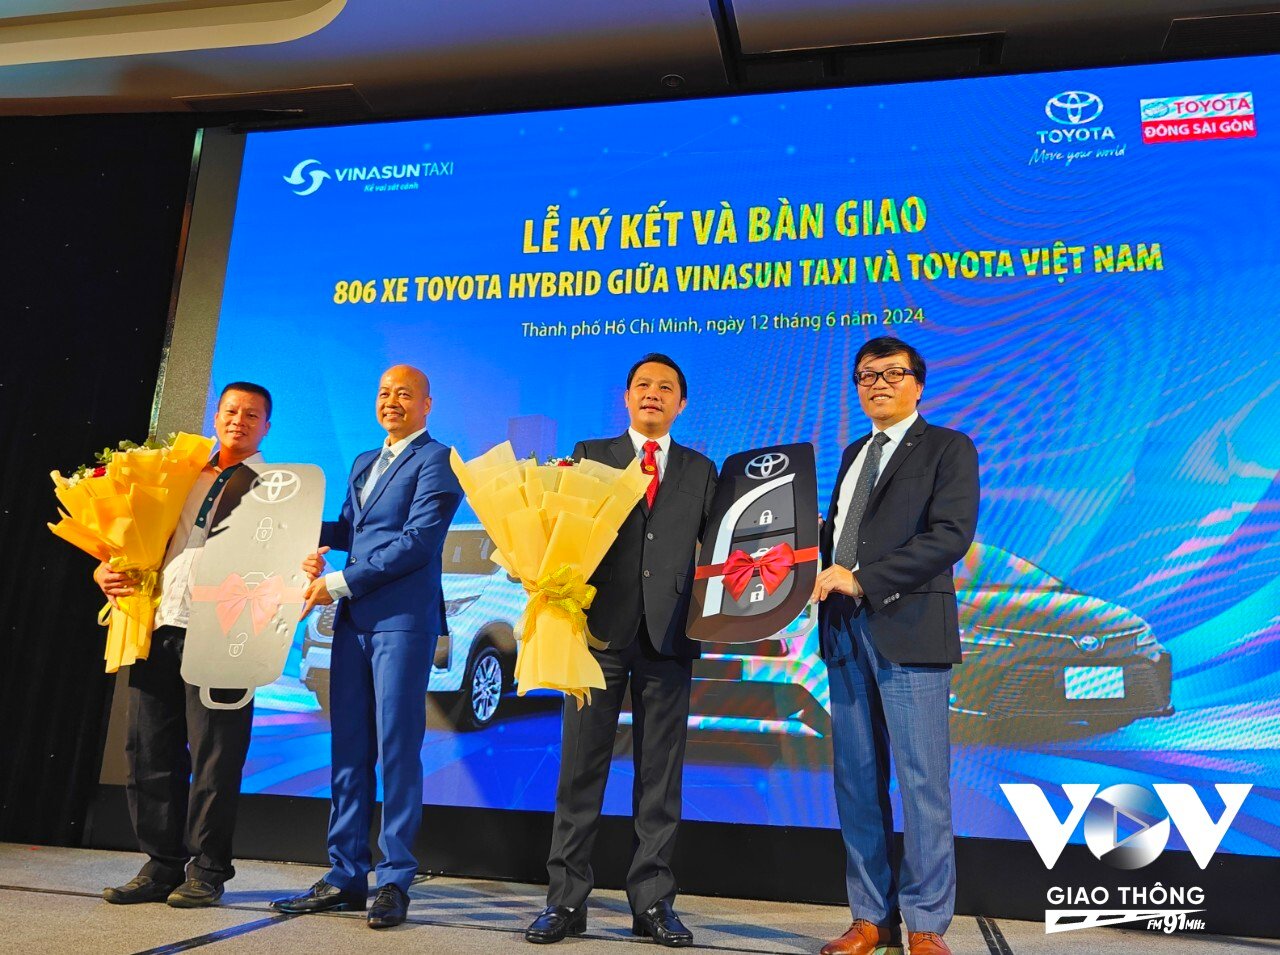 Sau 806 xe đợt này, Vinasun và Toyota Việt Nam cam kết cho kế hoạch đưa thêm 2000 xe taxi hybrid vào hoạt động trong năm 2025